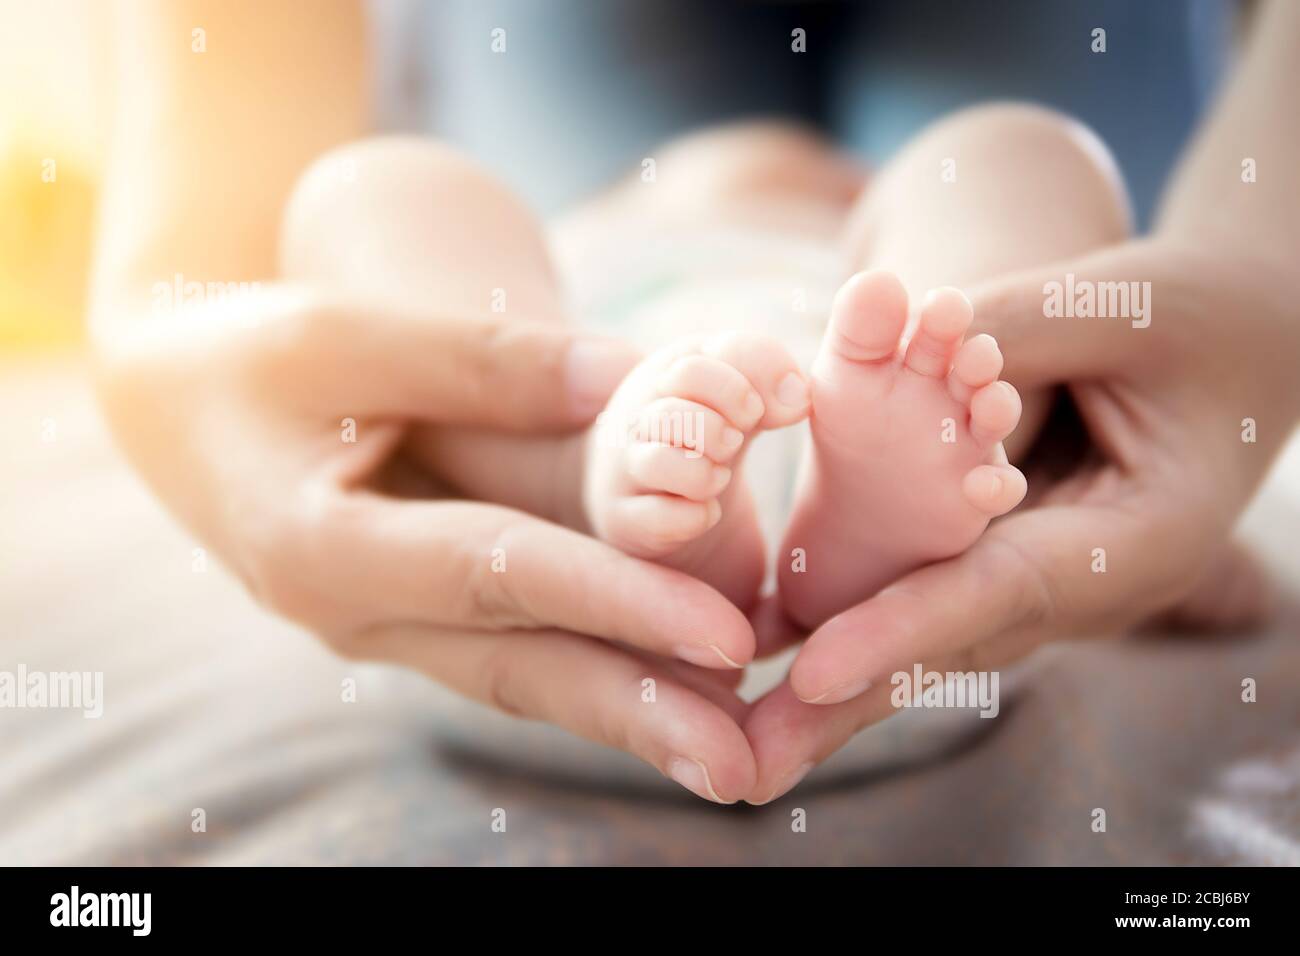 Bonne relation dans le concept de famille : les pieds de nouveau-né dans les mains de la mère. Parent tenant les petits pieds du nouveau-né dans les mains avec un soin doux Banque D'Images